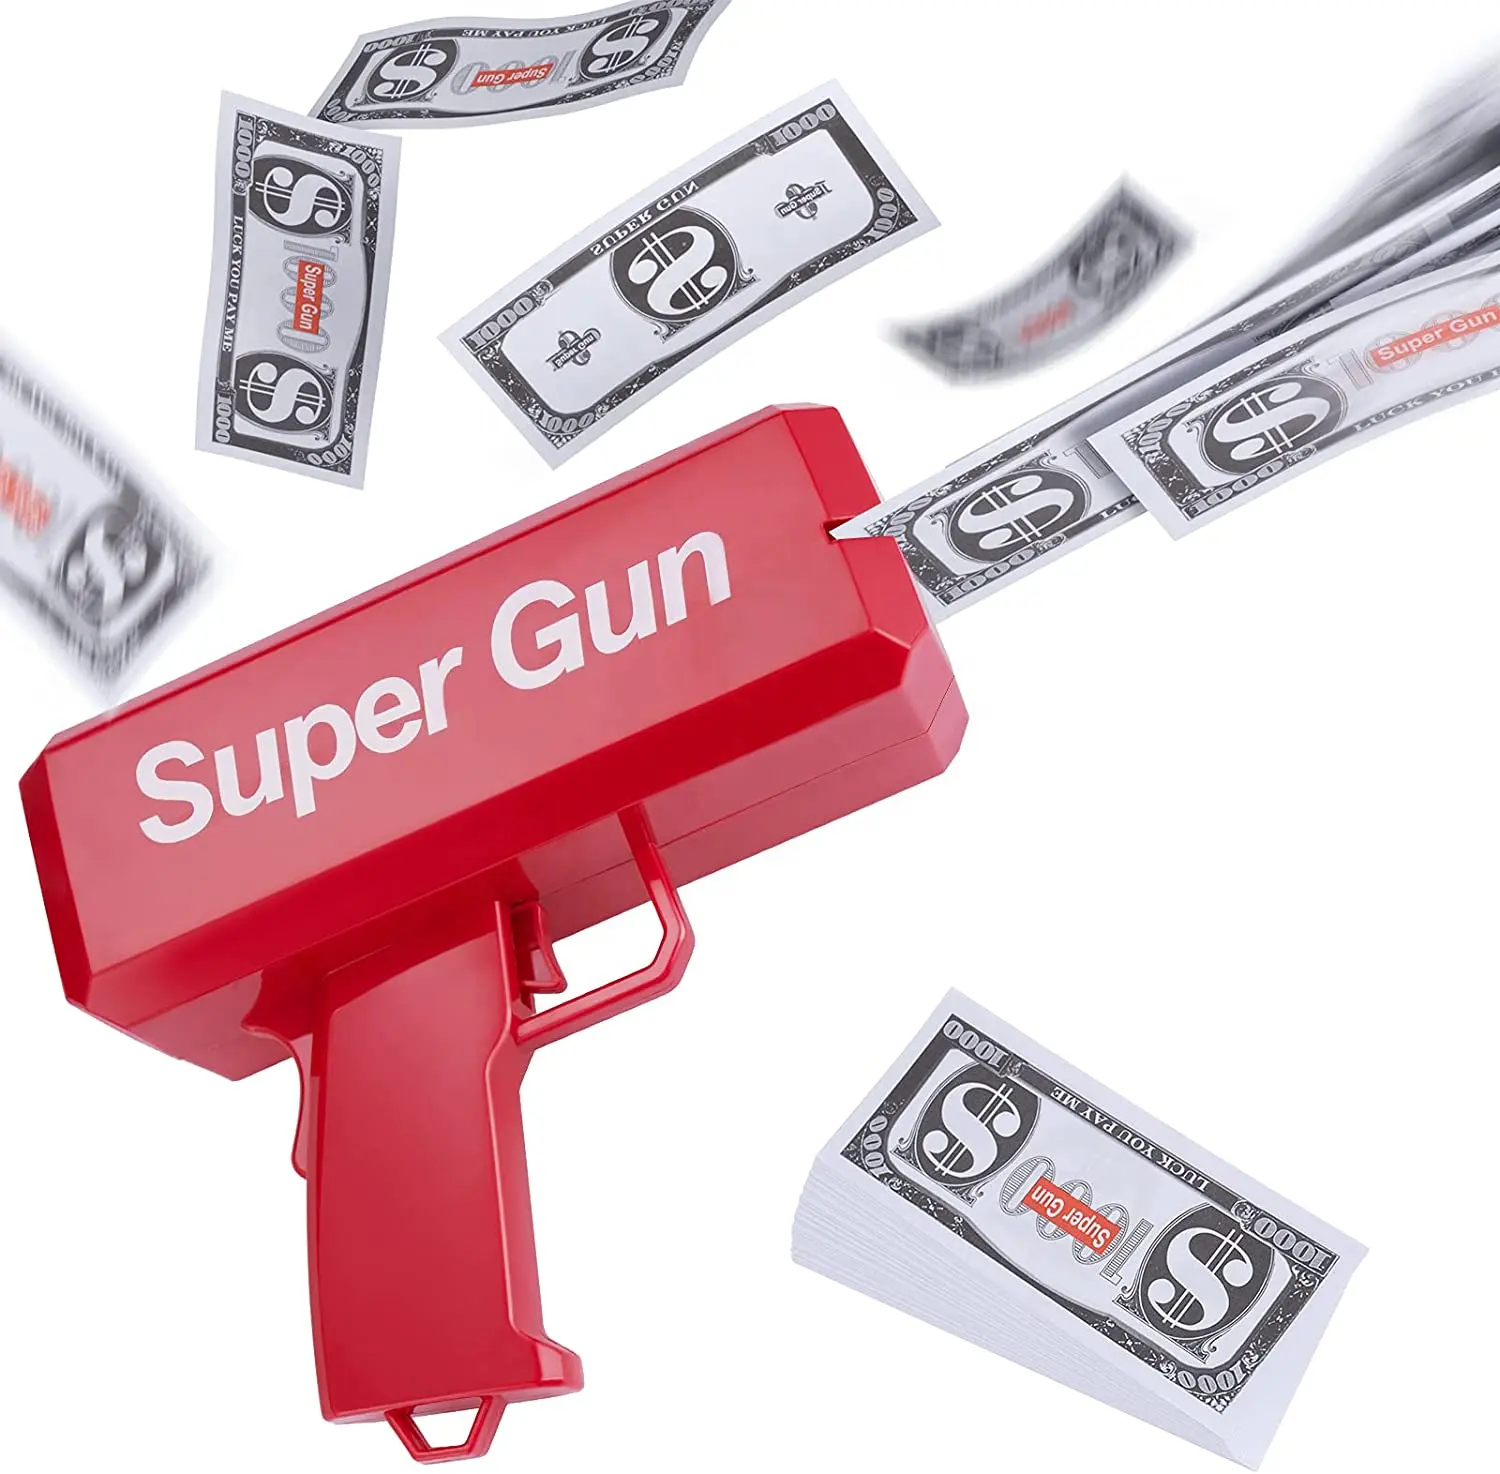 Super Spelen Maken Het Regen Handheld Gundispenser Shooter Met 100 Pcs Papier Dollar Bill Spelen Speelgoed Goud Cash Kanon Geld gun